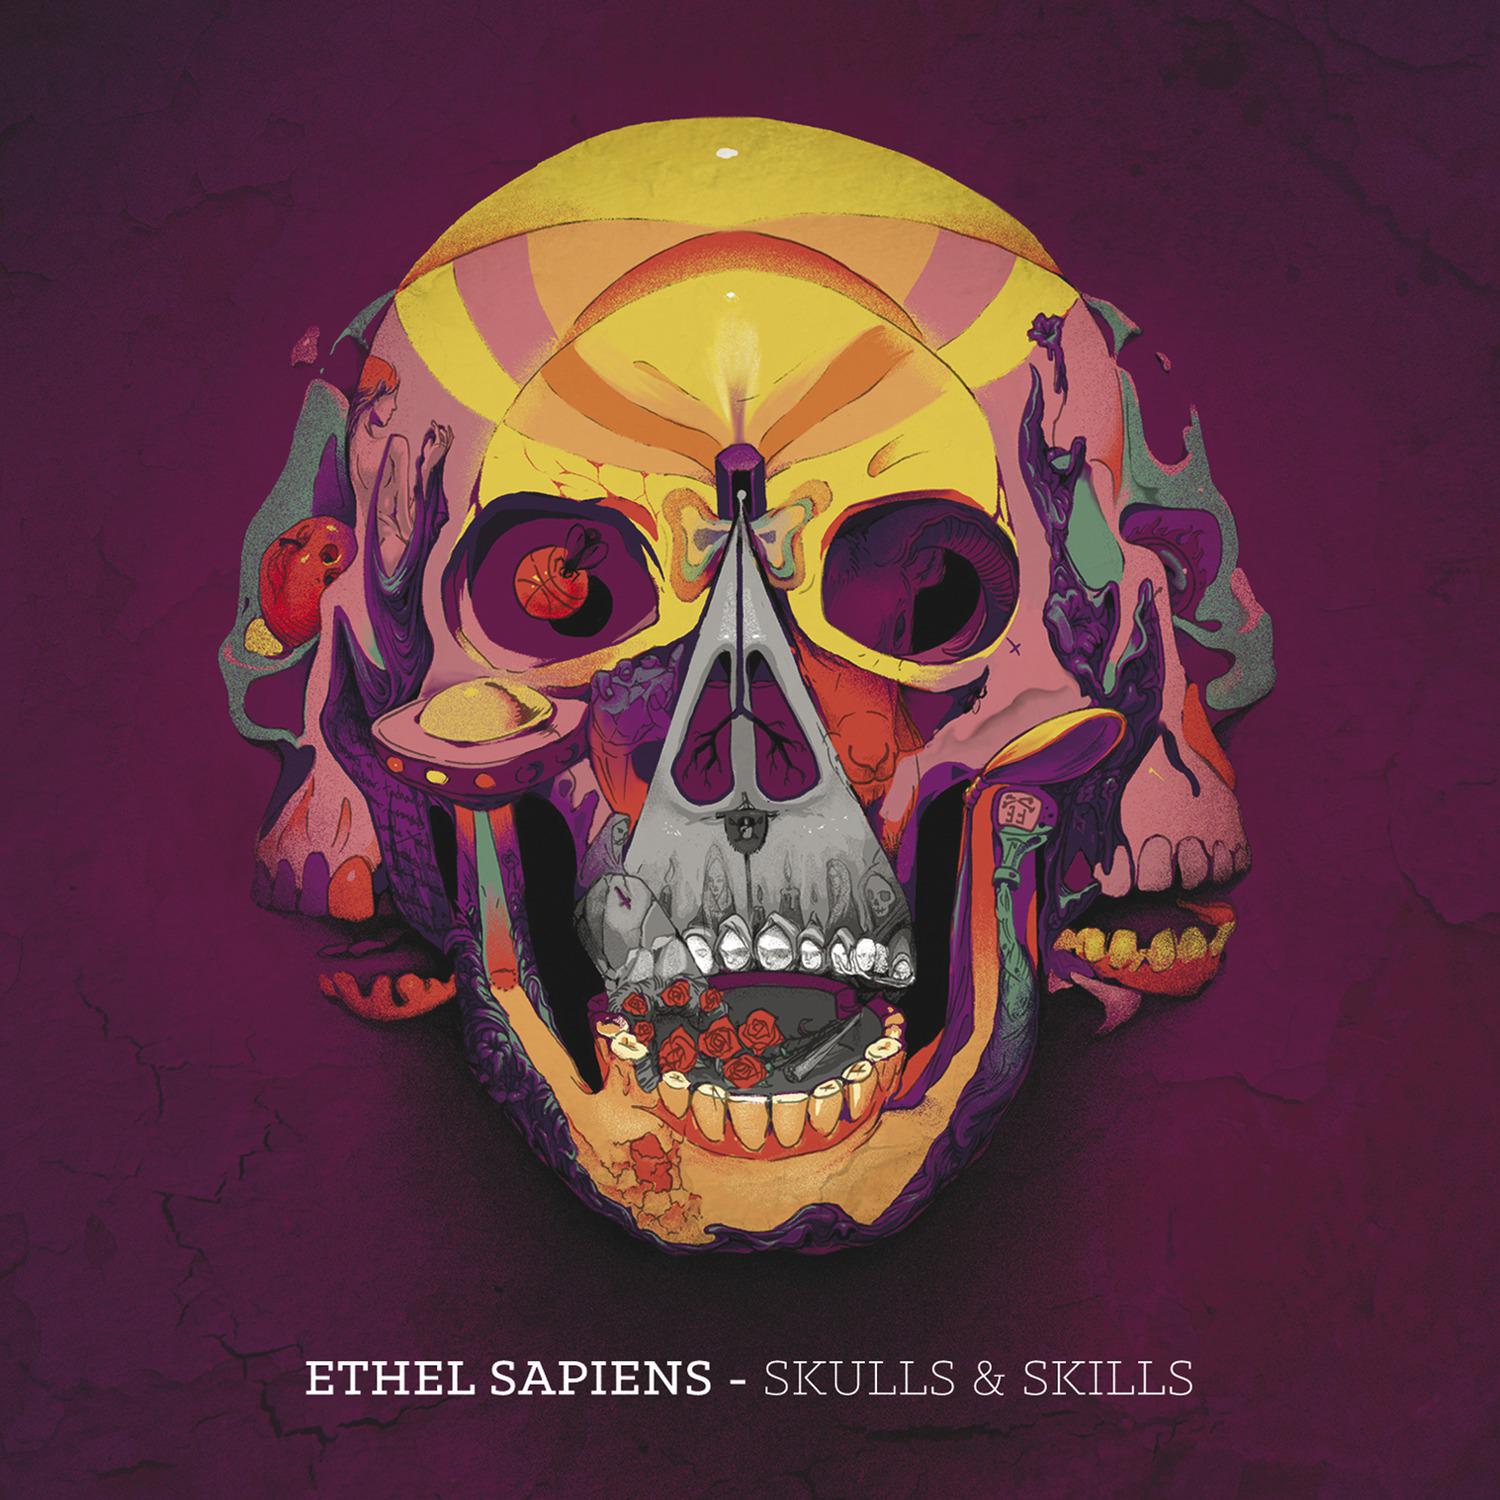 Skulls & Skills